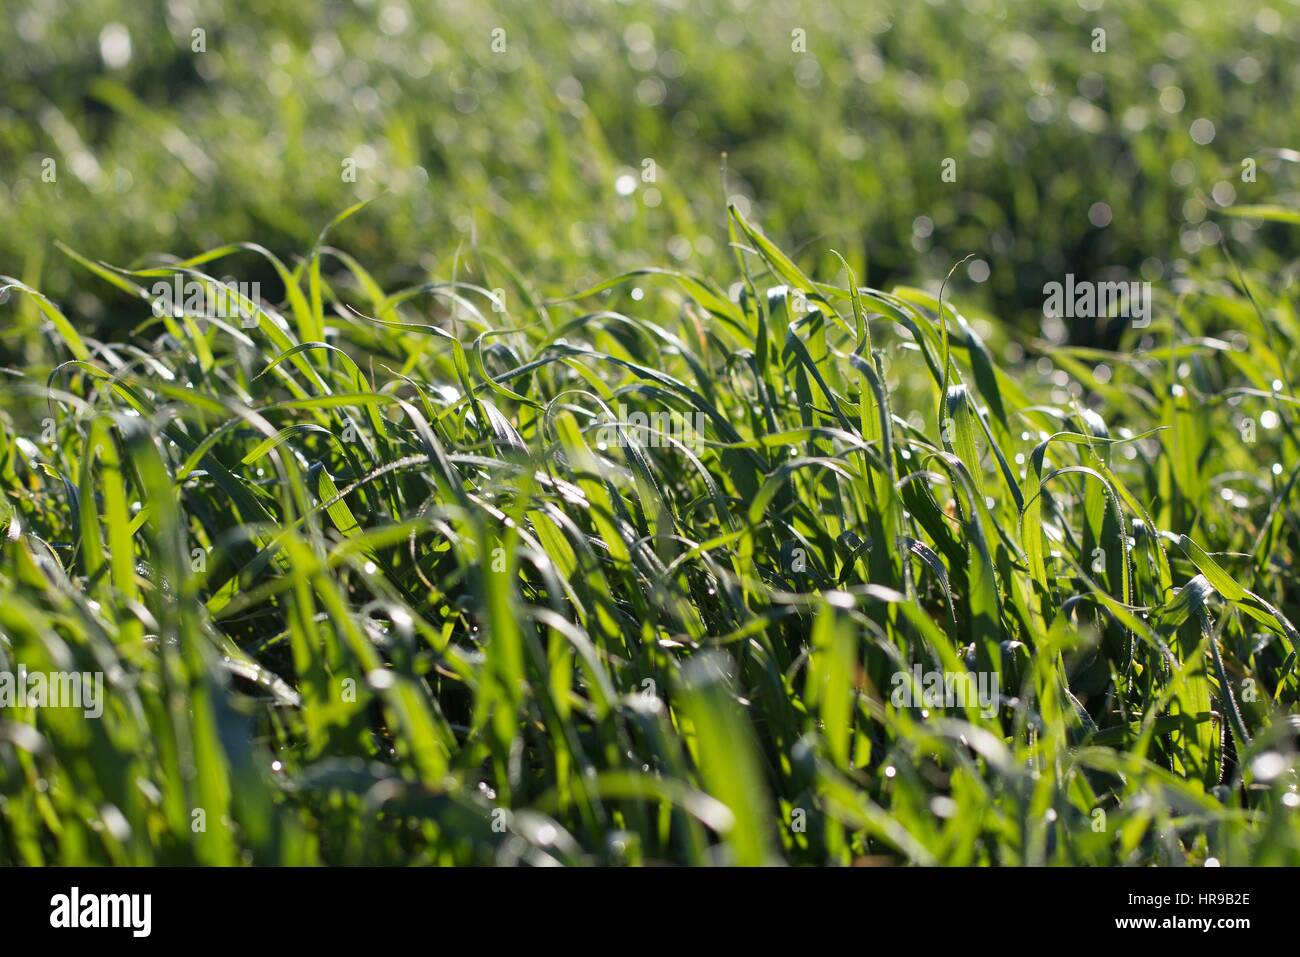 Eine Nahaufnahme von langen, grünen Rasen in einer leichten Brise weht. Stockfoto